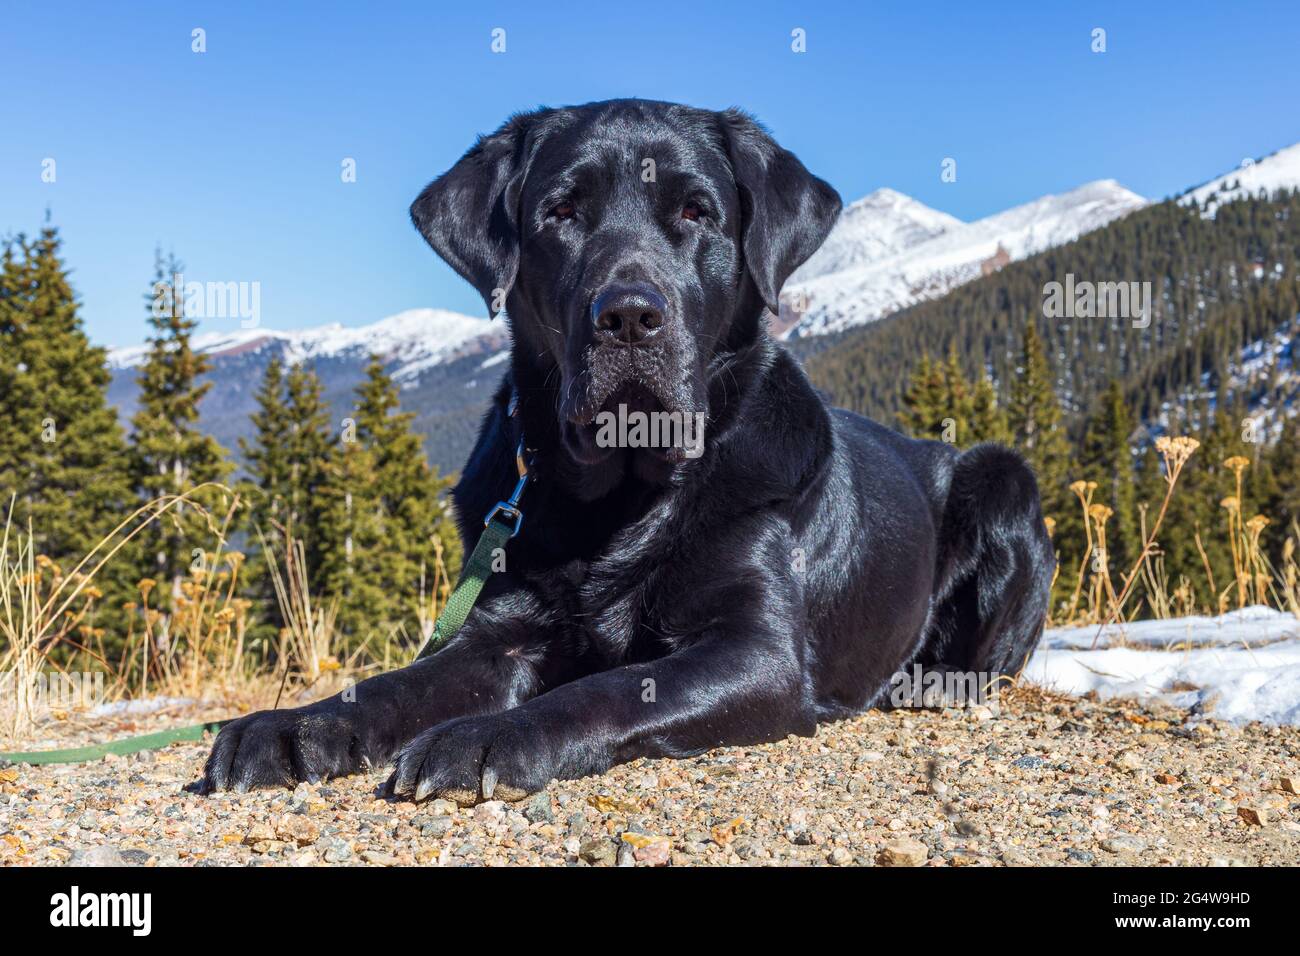 Der ruhige, schwarze labrador Retriever Hund liegt auf dem Dreck mit dem Arapaho National Forest hinter ihm und den schneebedeckten Rocky Mountains in der Ferne. Stockfoto